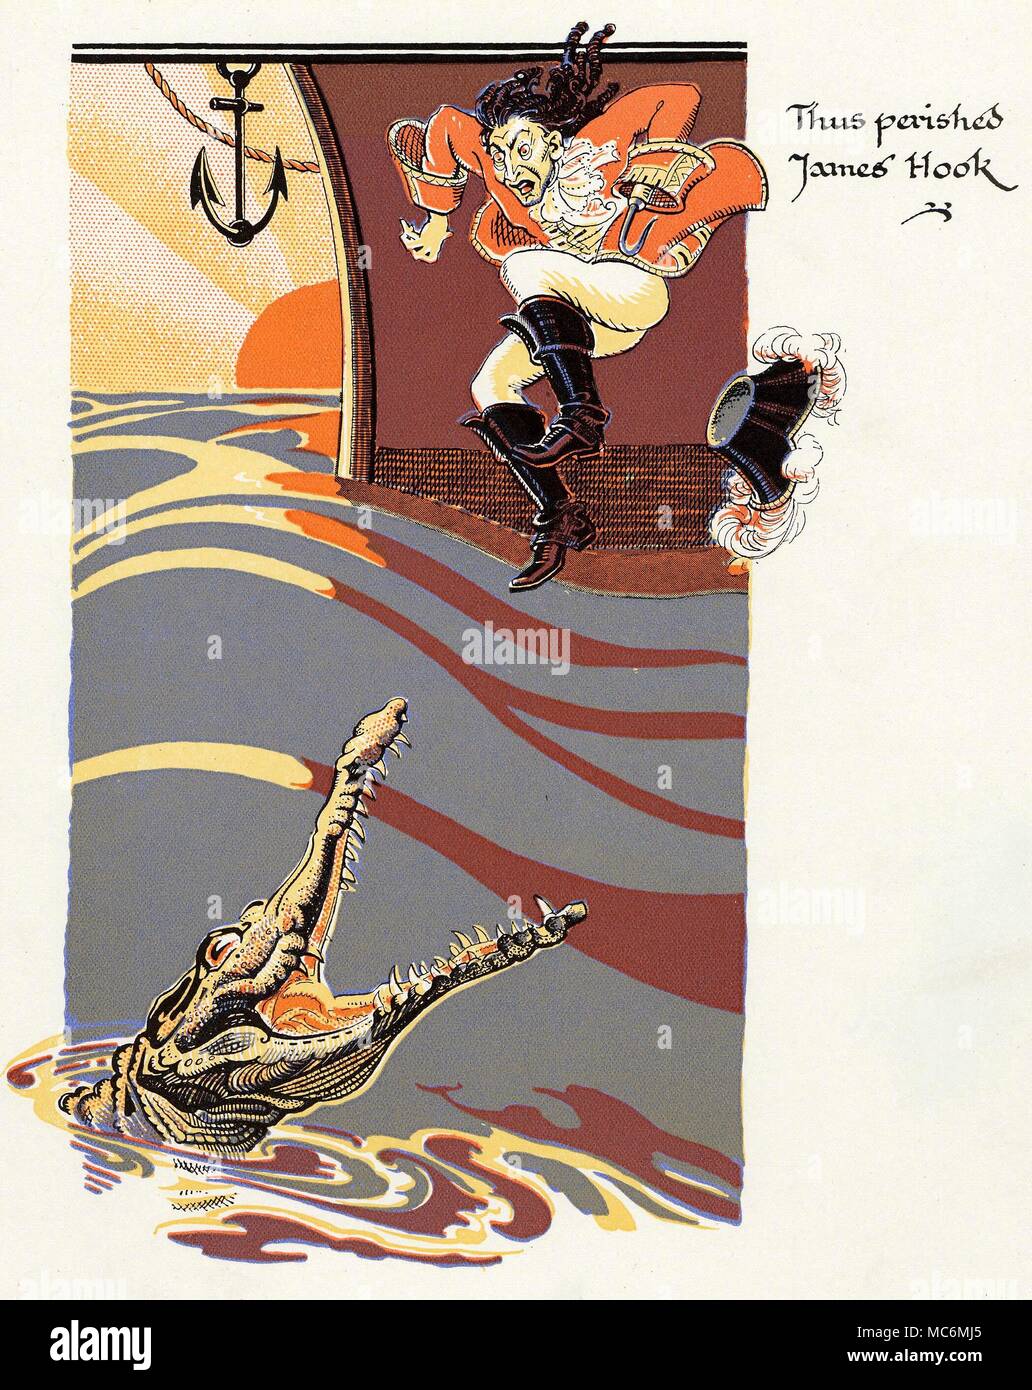 Cuentos de Hadas - PETER PAN Ilustración por Gwynedd M. Hudson, por .  Barrie's Peter Pan y Wendy, sin fecha, pero circa 1930. 'Pues perecieron  James Hook